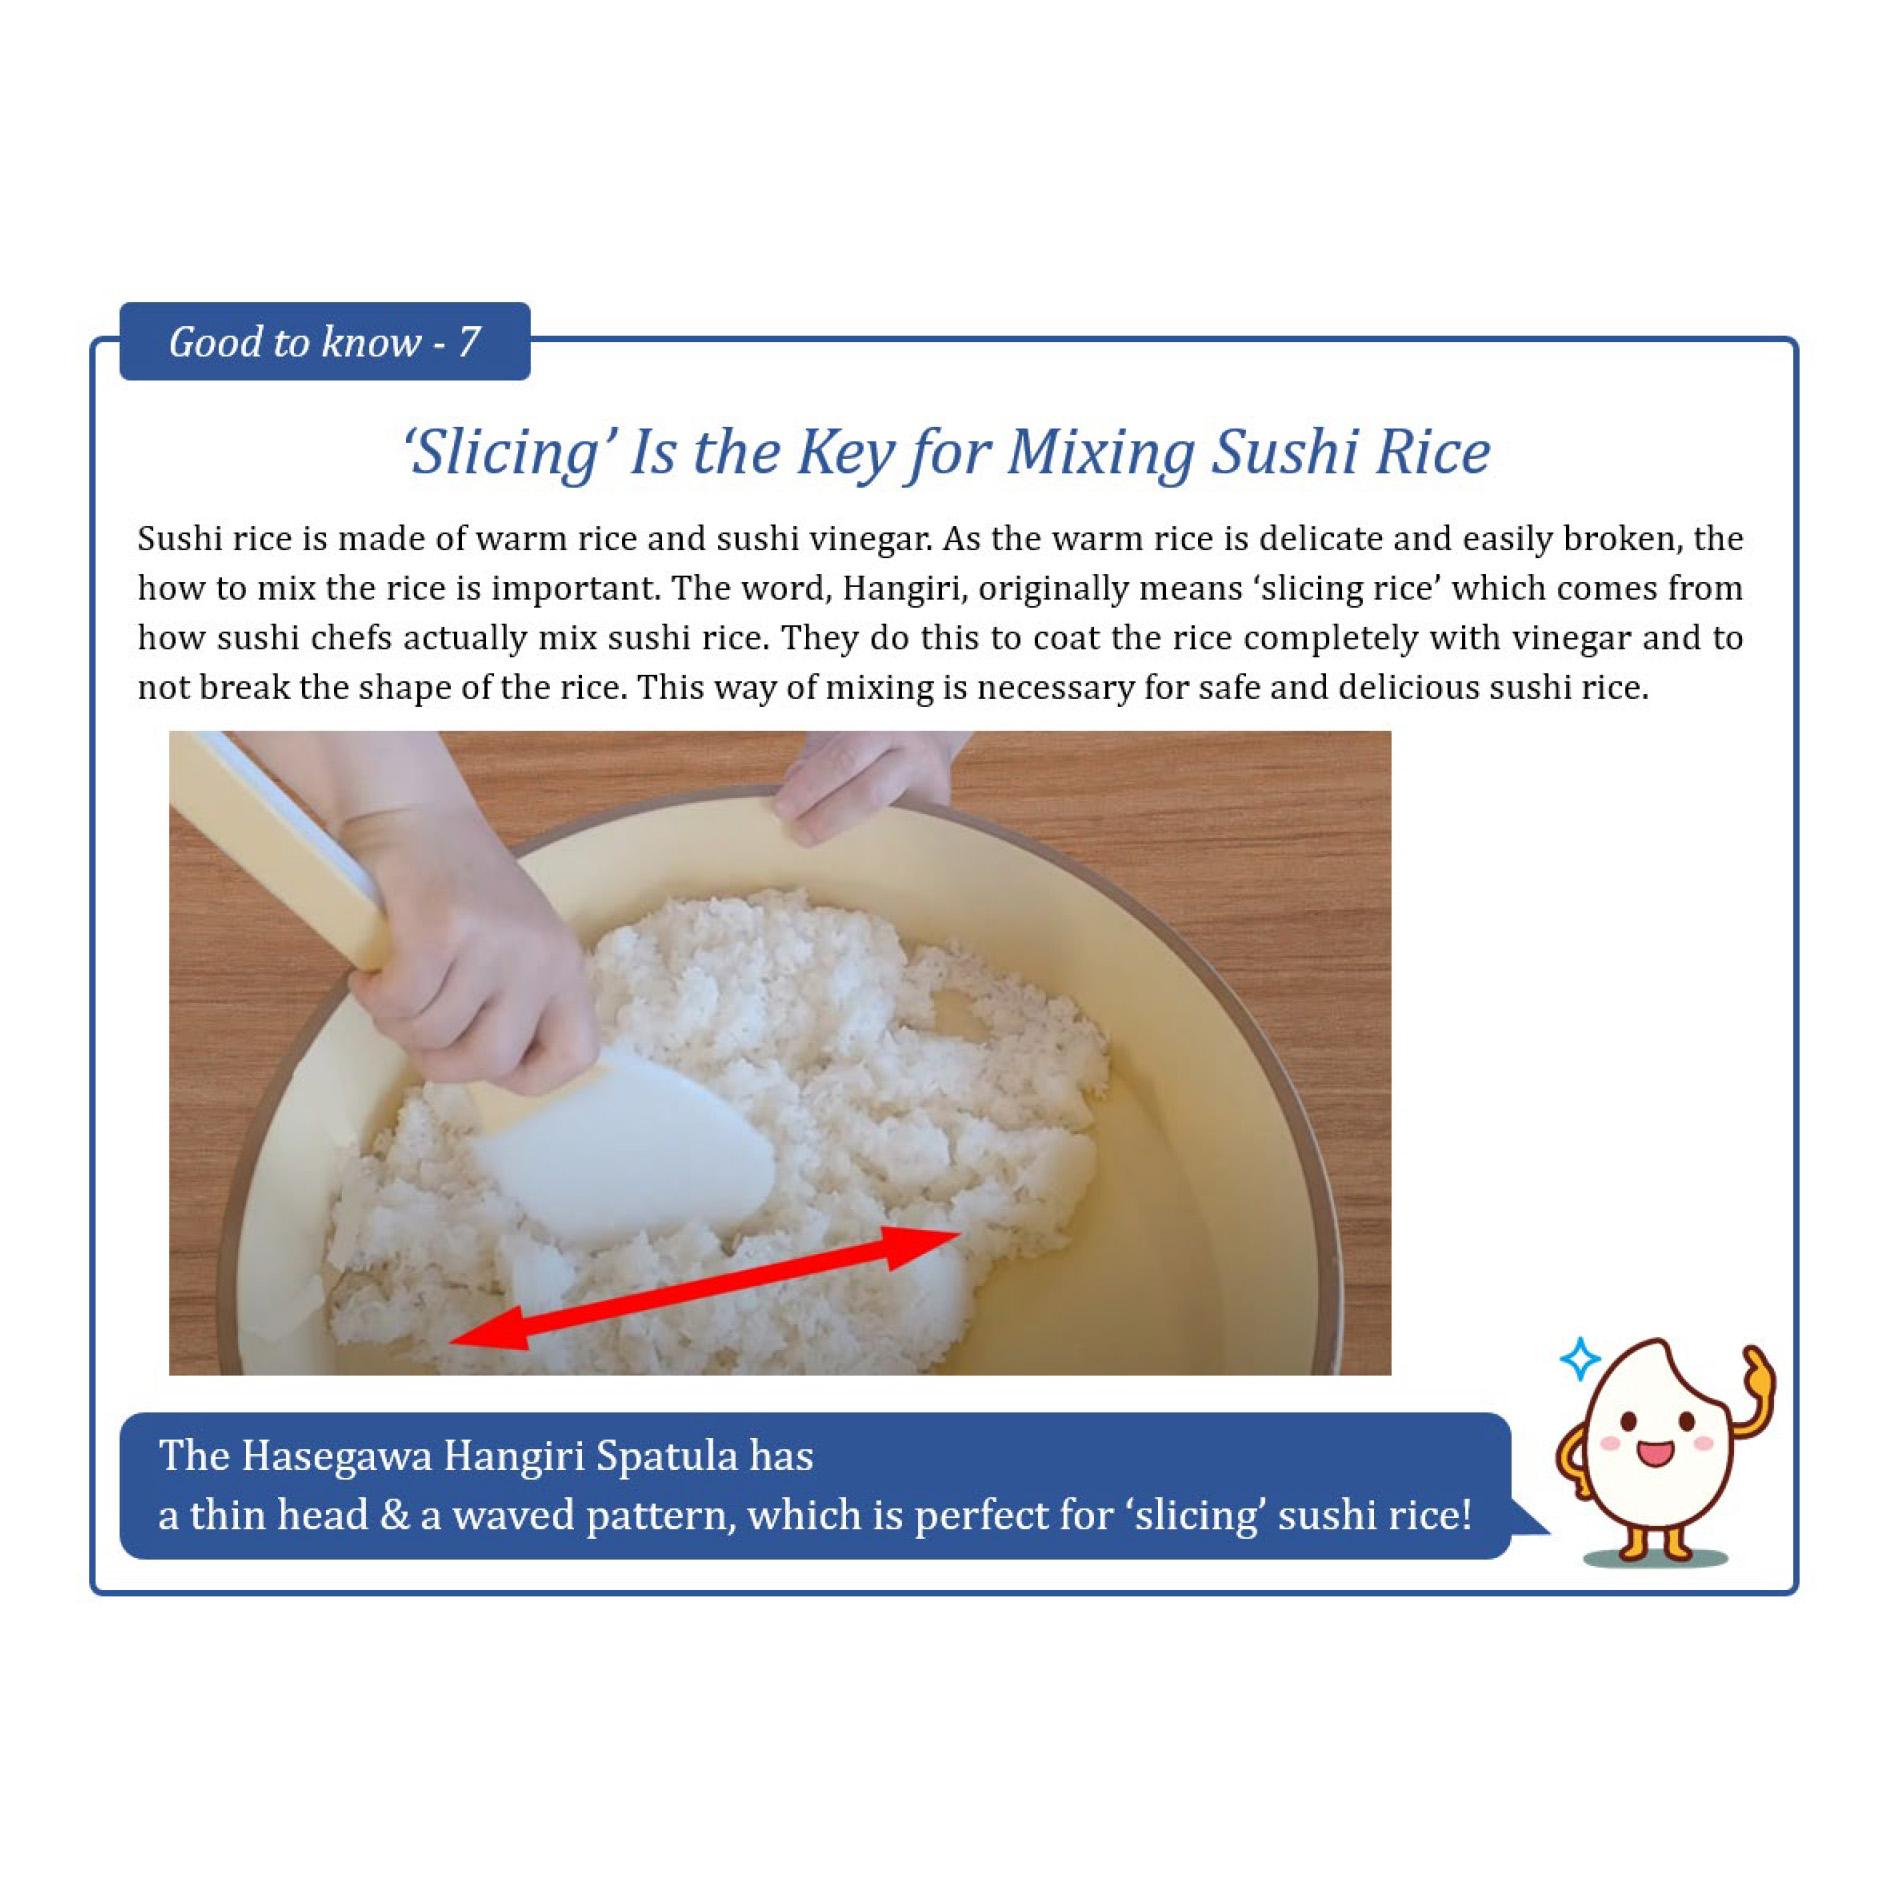 מרית האנגירי אנטי-בקטריאלית מקצועית 45 ס״מ לערבוב אורז סושי הסגאווה יפן (FSOG-45)